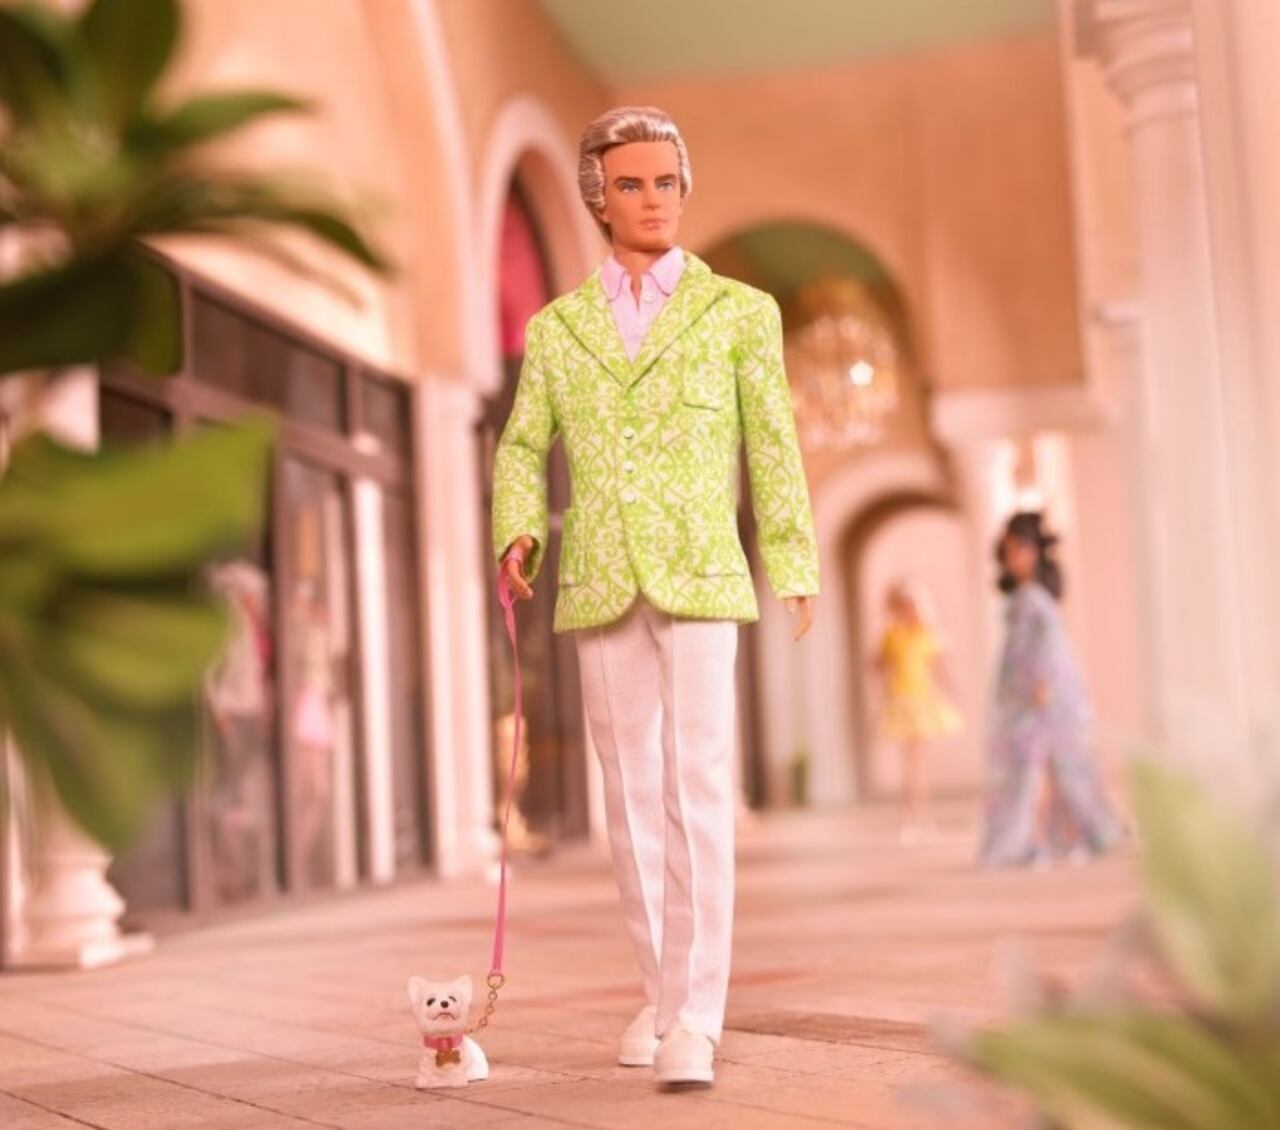 Esta versión de Ken llevaba un atuendo de moda de Palm Beach, con cabello rubio platino, una americana verde y pantalones plisados también en verde. Además, venía acompañado de un perrito llamado Sugar, de la raza West Highland Terrier.